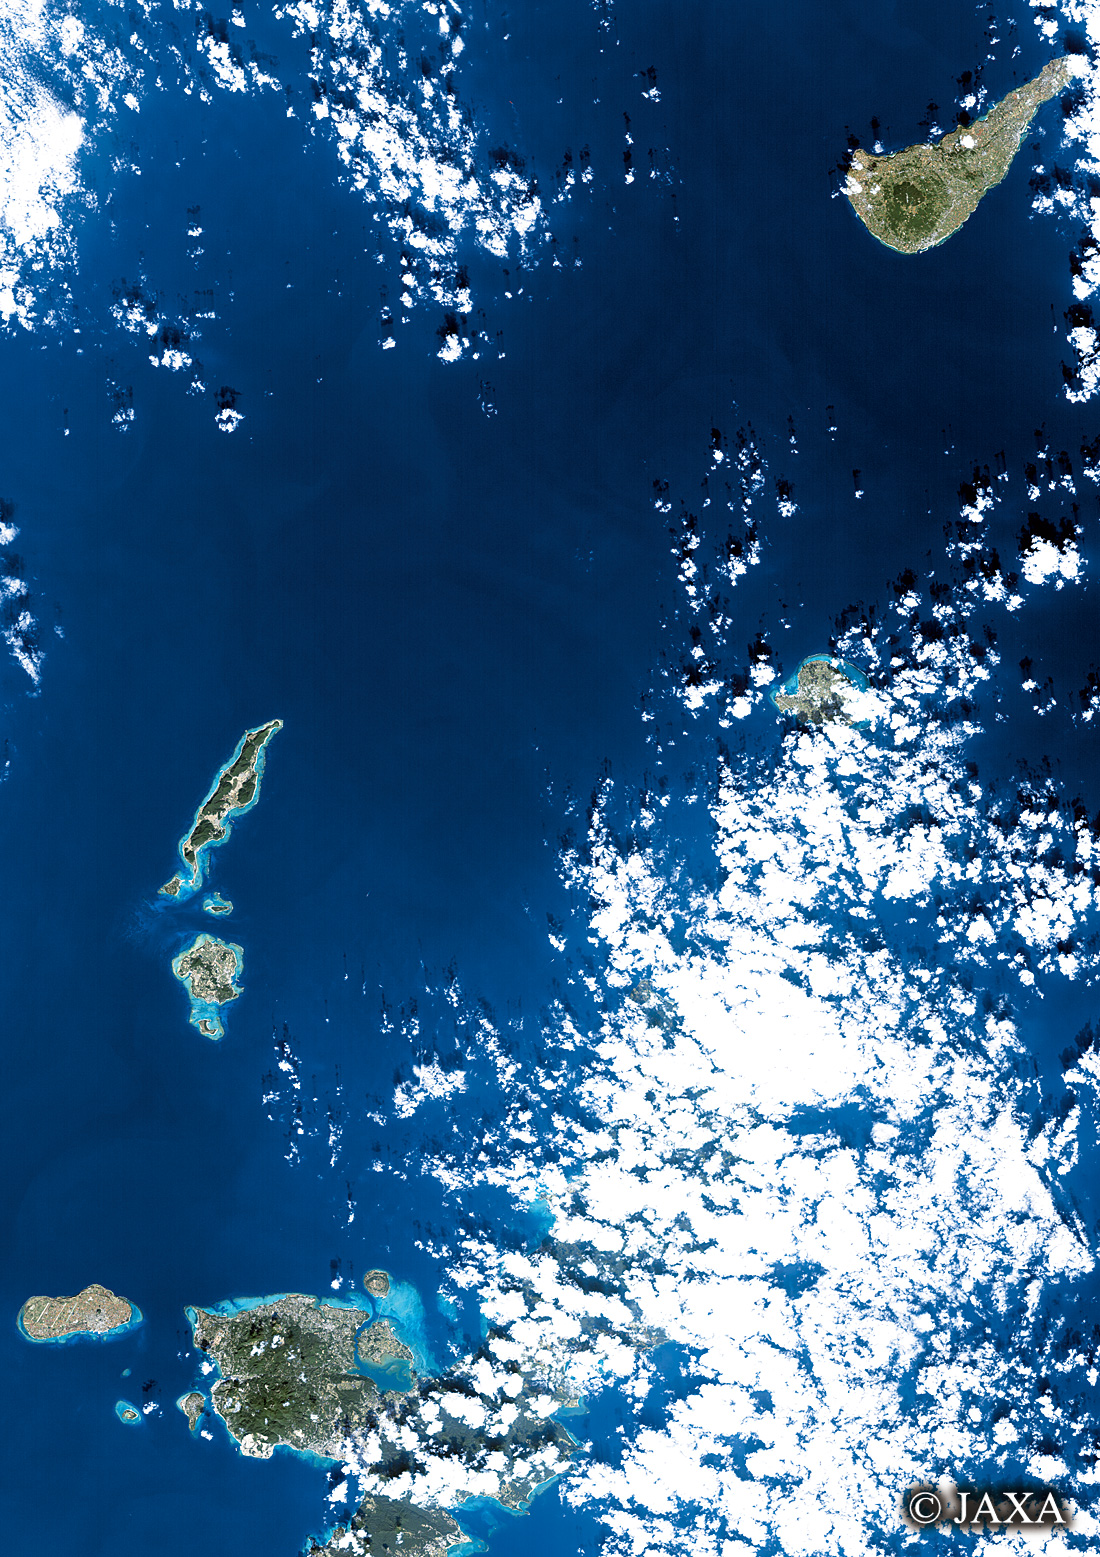 だいちから見た日本の都市 沖永良部島～与論島～沖縄:衛星画像